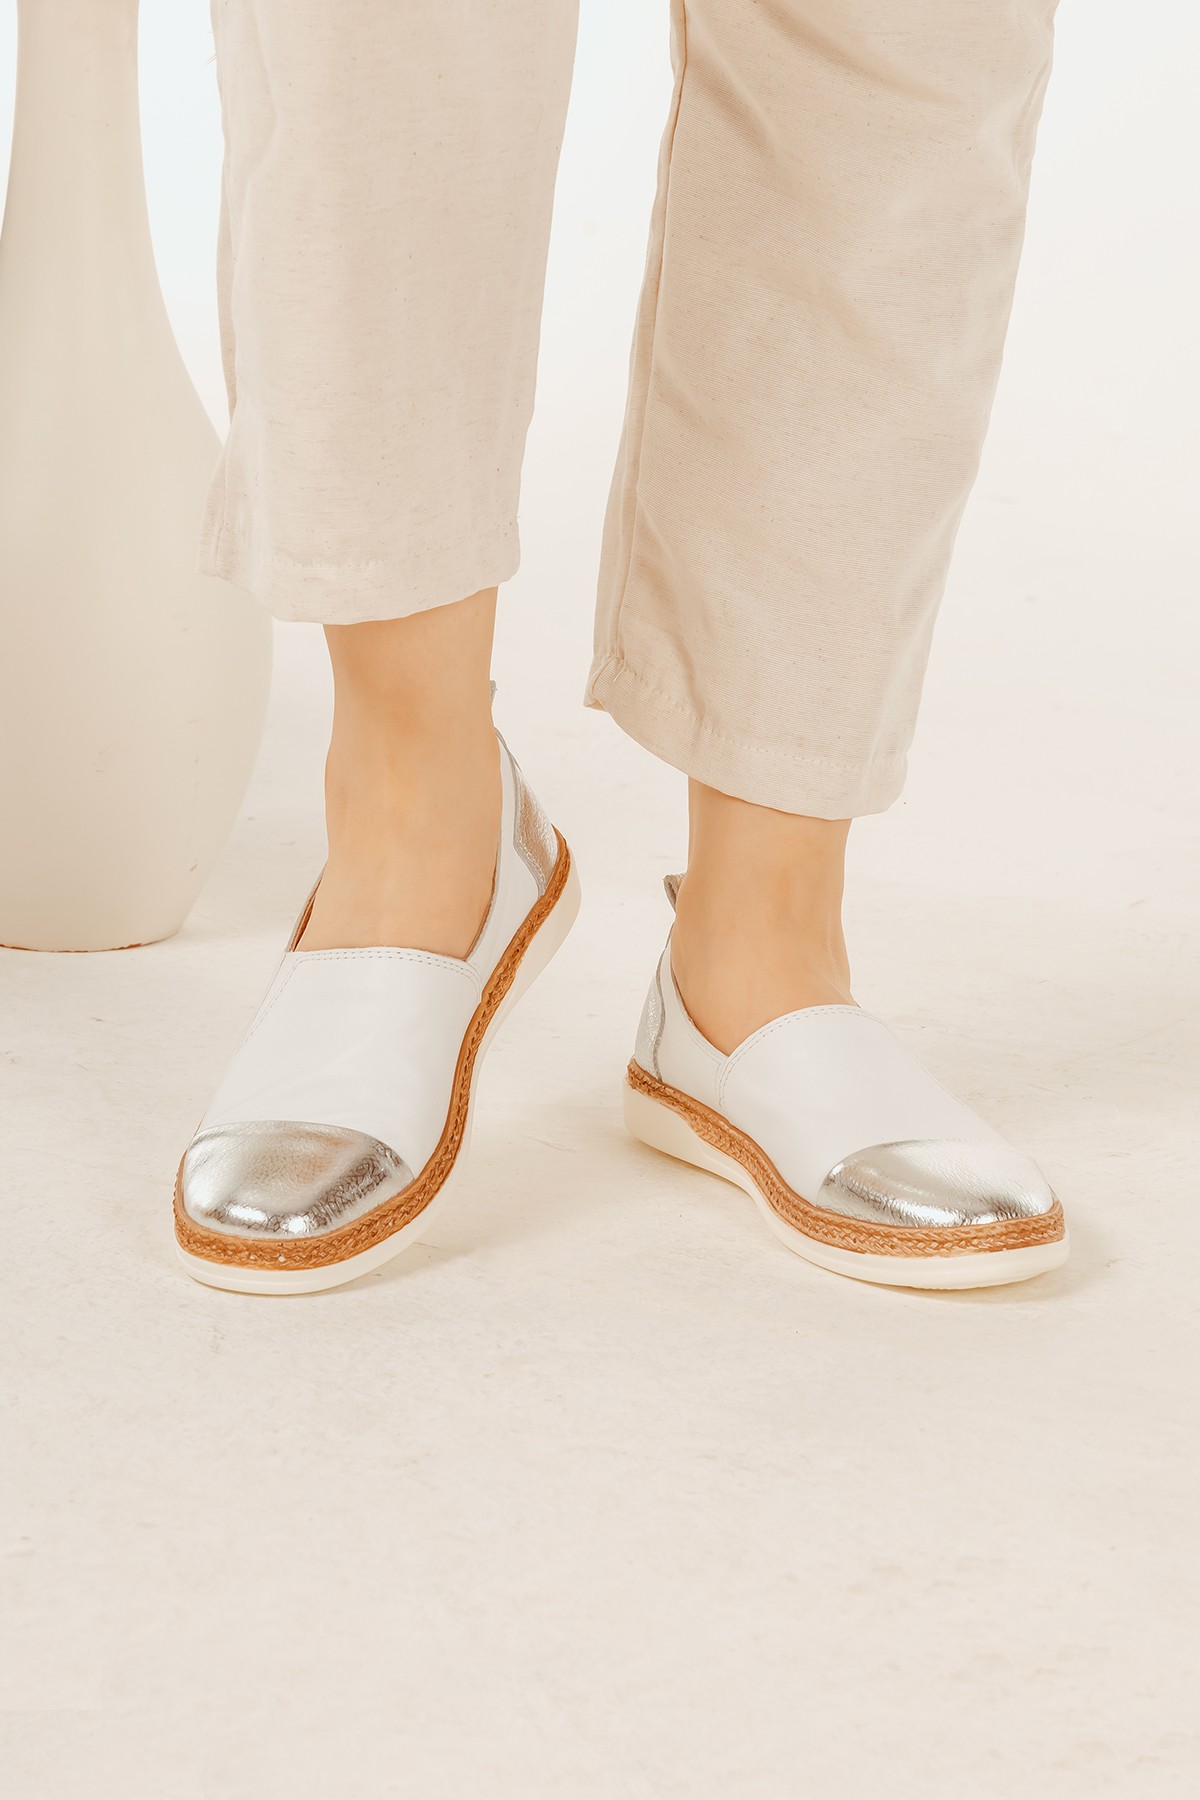 Cooliza Hakiki Deri Lastikli Renkli Rahat Kadın Günlük Casual Babet Ayakkabı - Beyaz-Gümüş